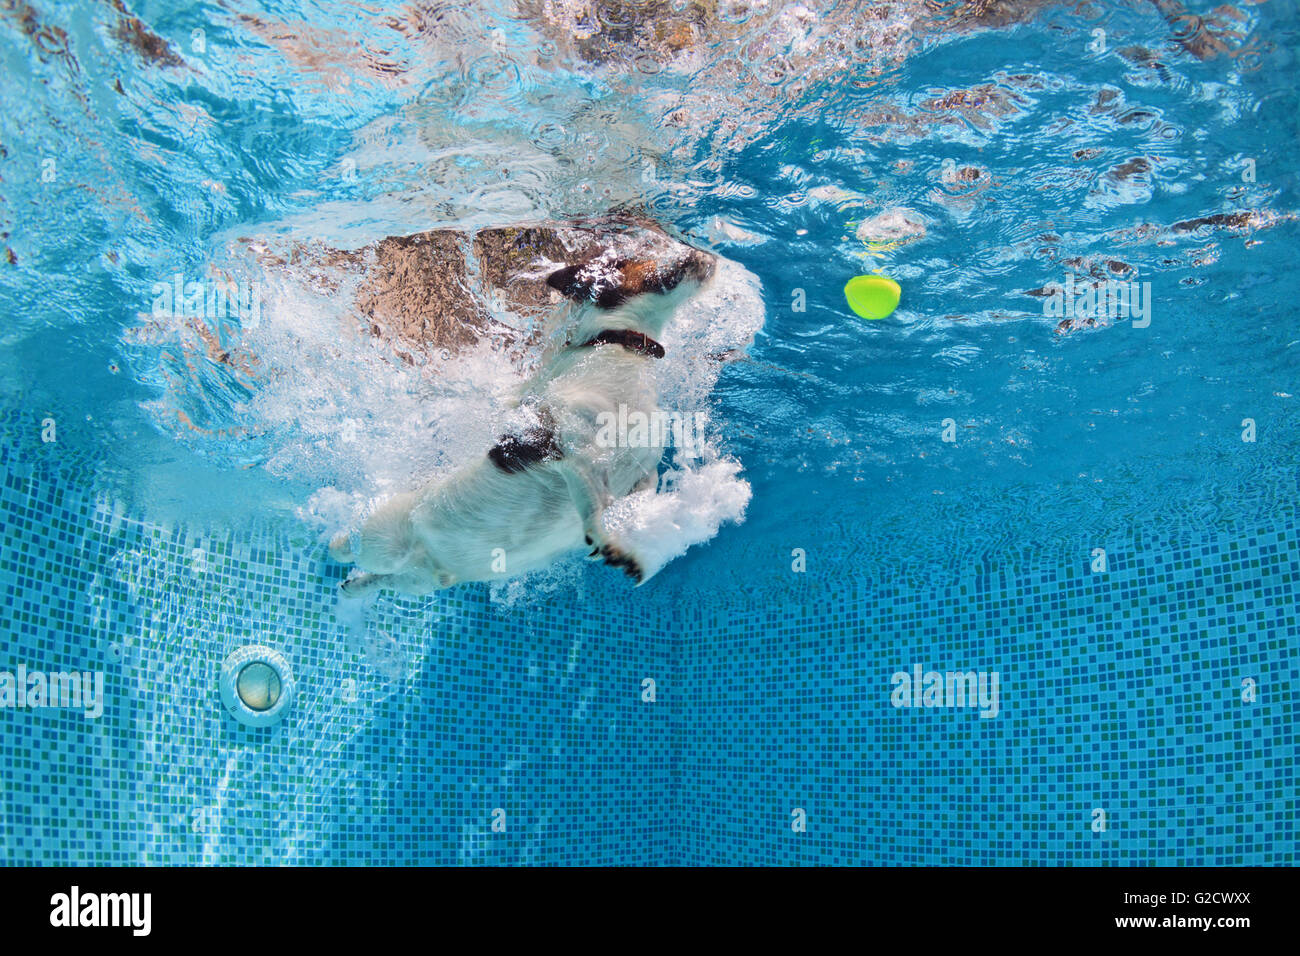 Giocoso jack russell terrier puppy in piscina la formazione con divertimento - Salto del cane e immersione subacquea a recuperare la palla. Foto Stock